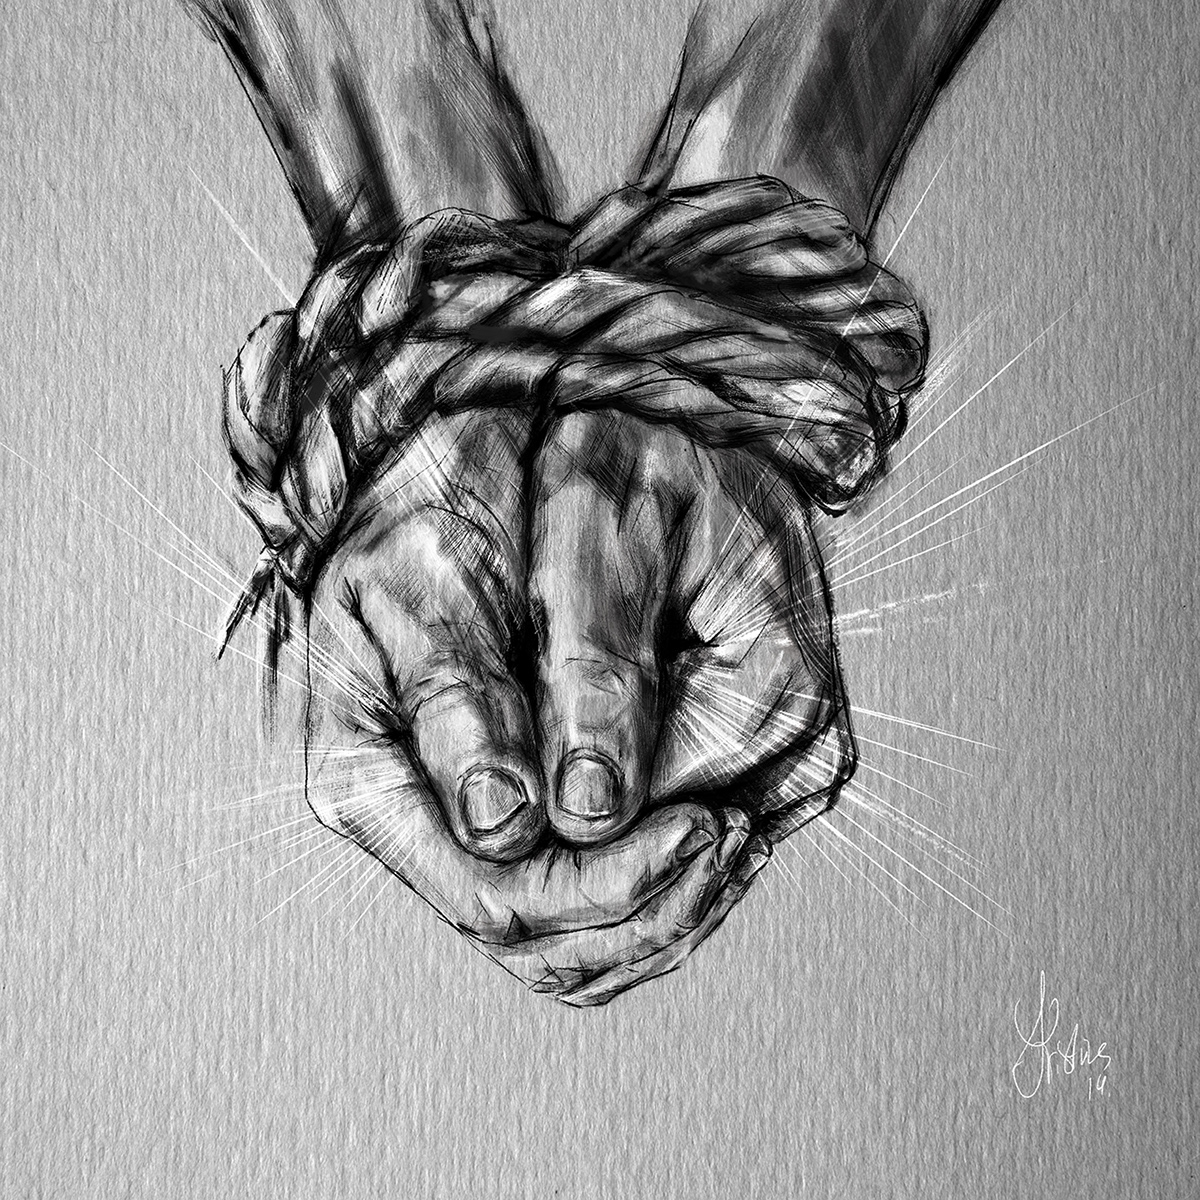 tied hands hands rope